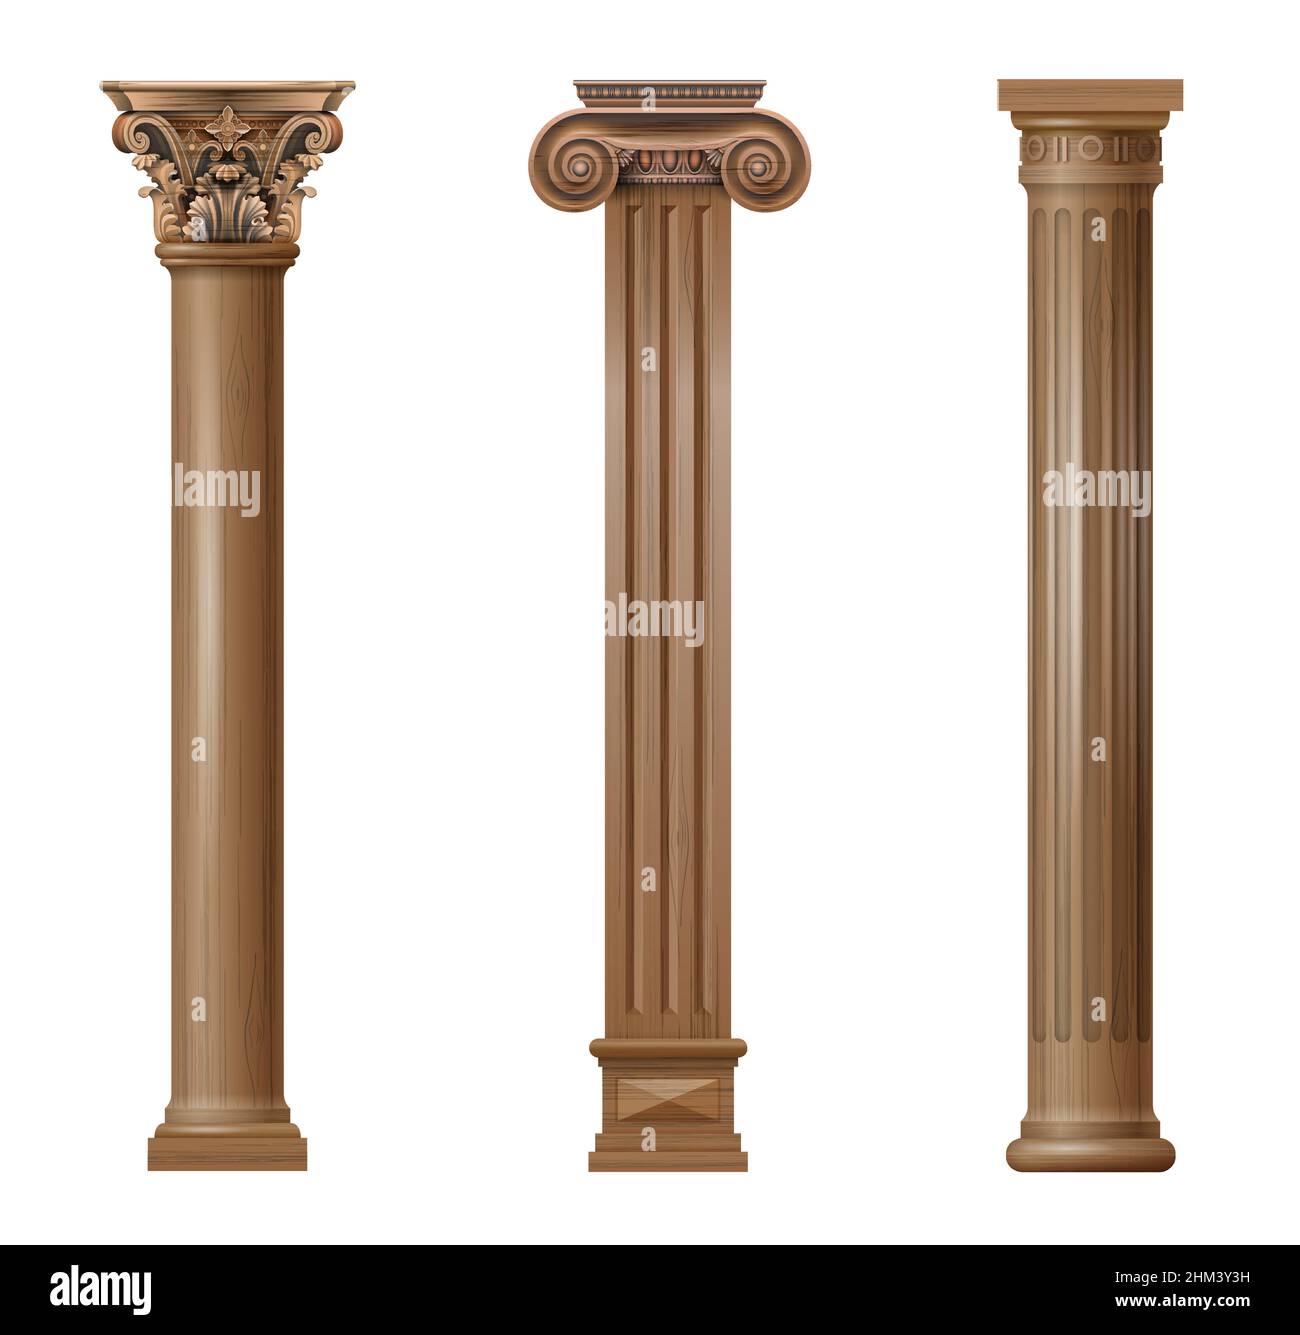 Ensemble de colonnes architecturales sculptées en bois classique vintage avec ornement pour l'intérieur ou la façade.Éléments de menuiserie ou baumes.Graphiques vectoriels Illustration de Vecteur